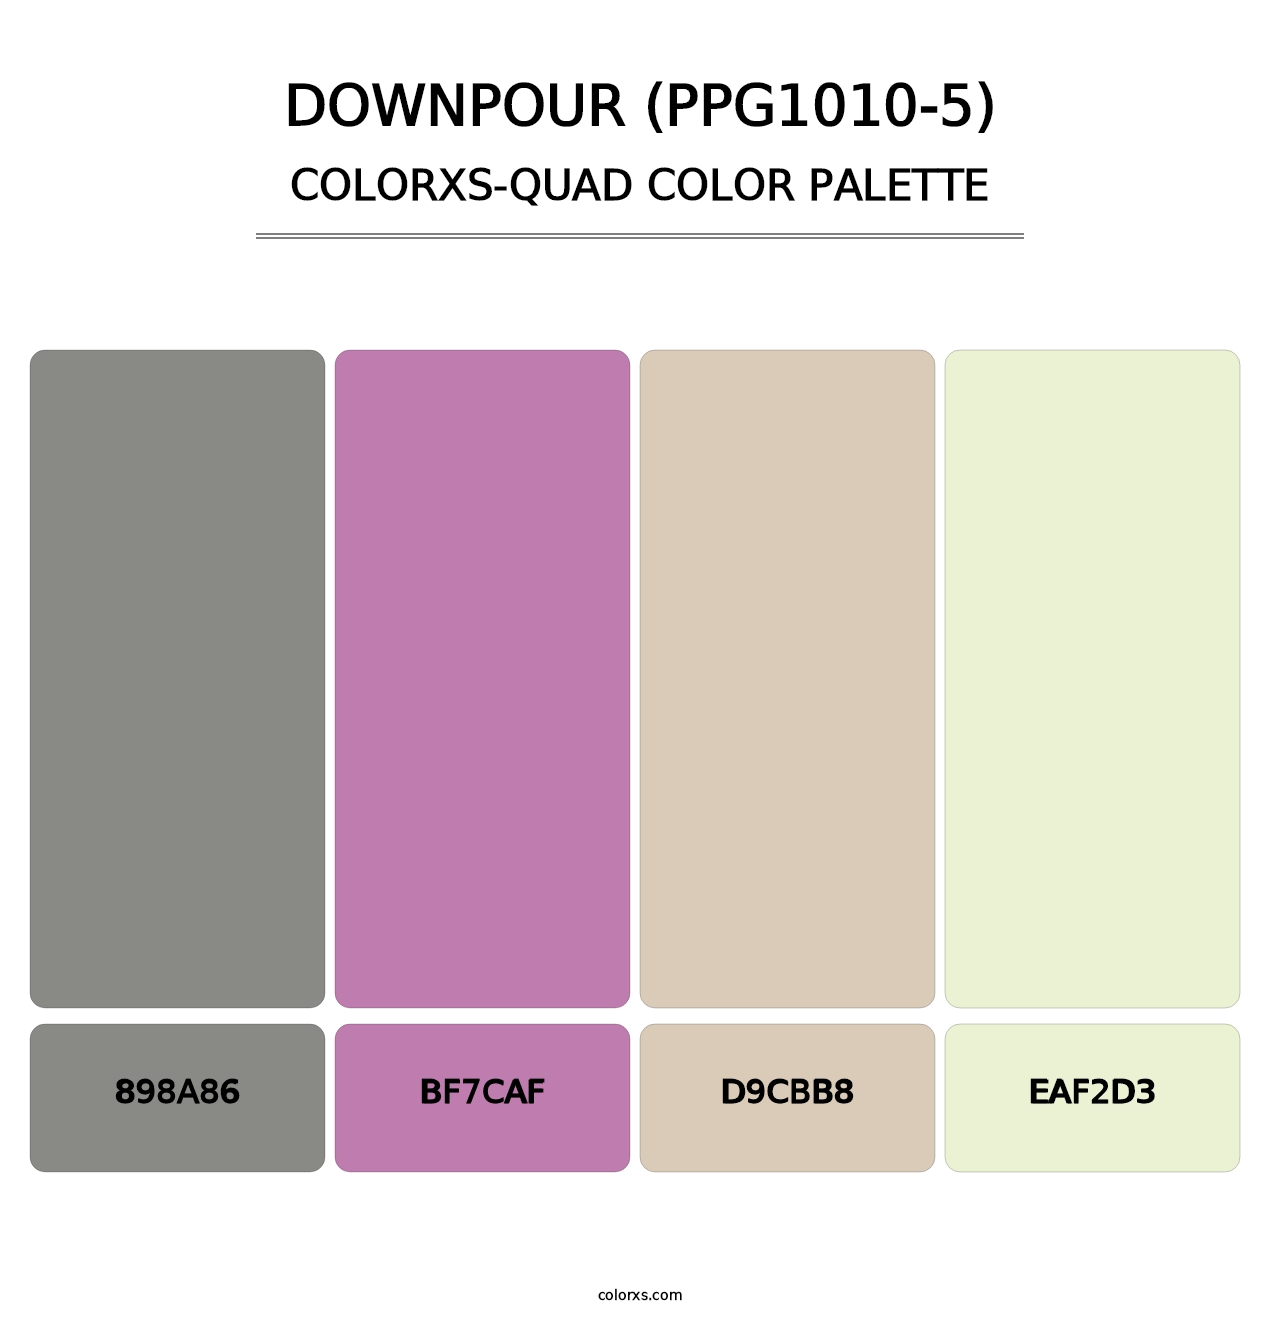 Downpour (PPG1010-5) - Colorxs Quad Palette